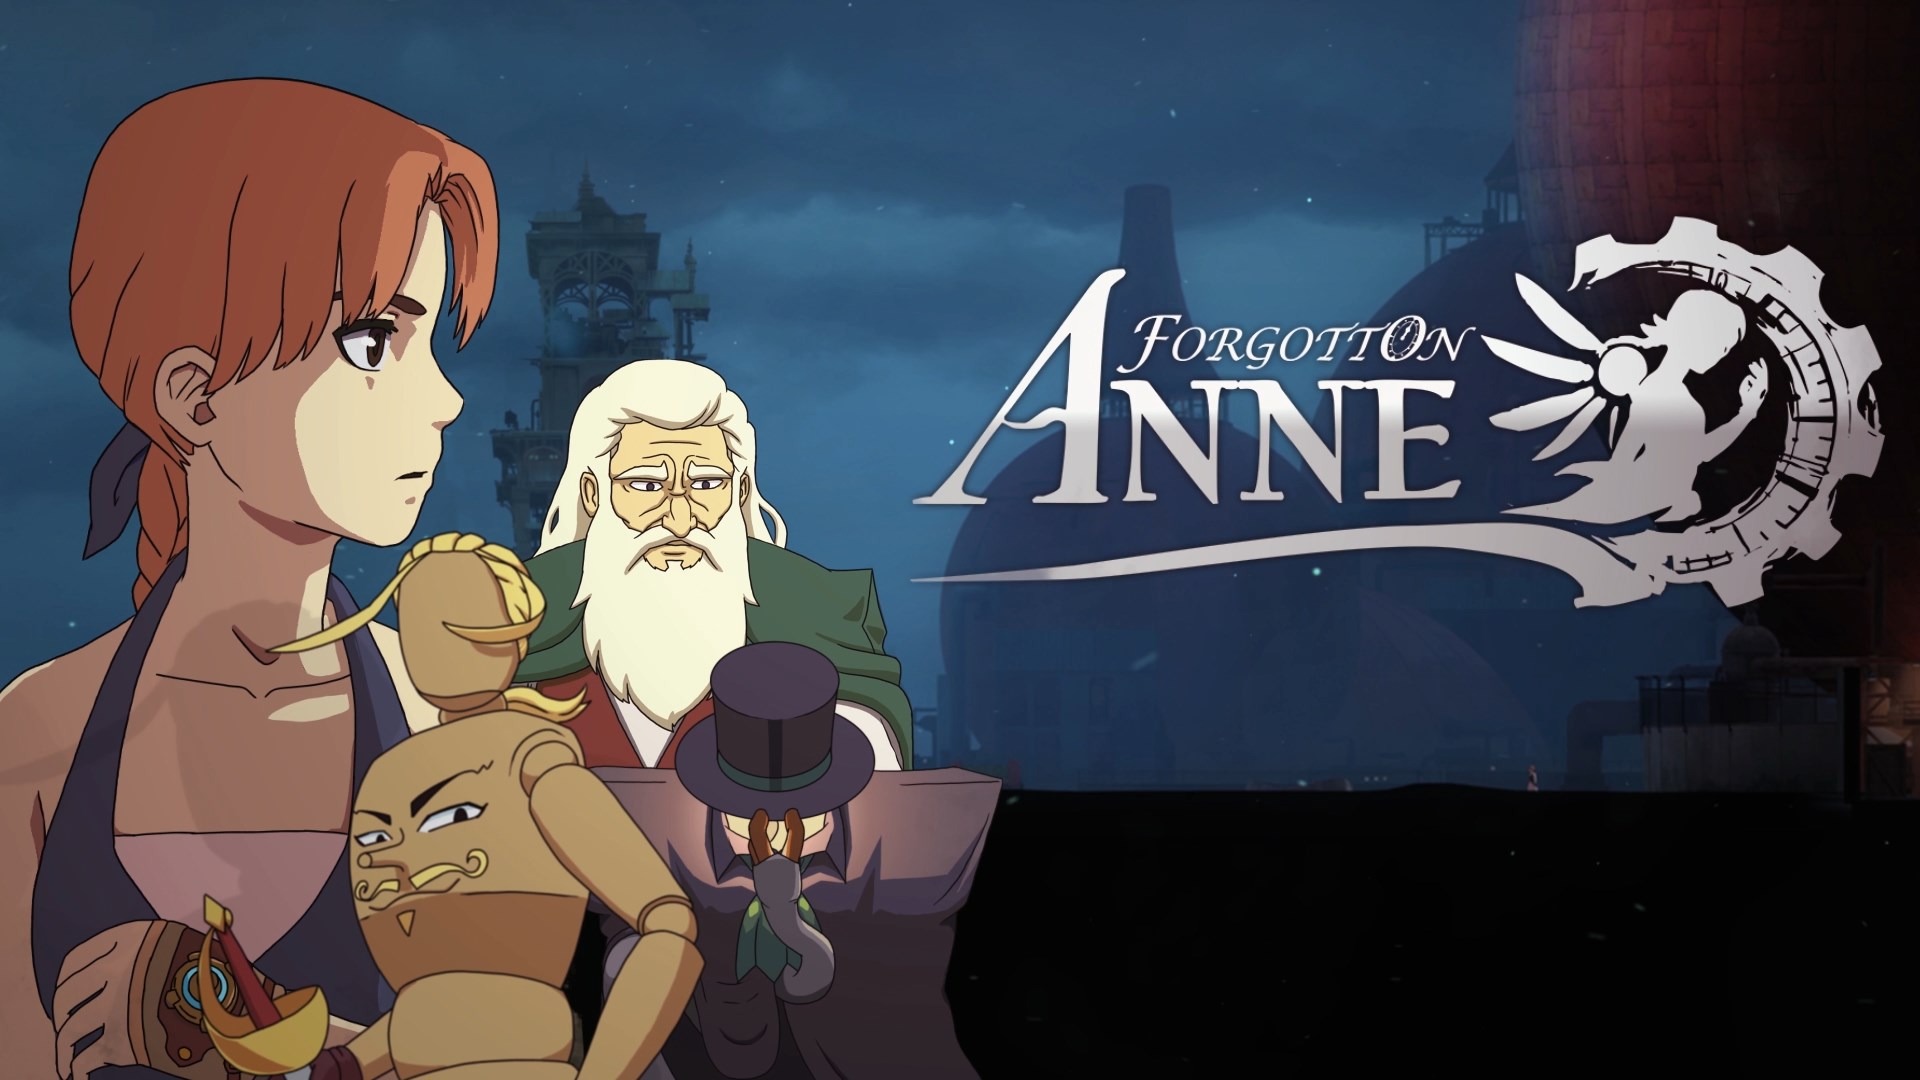 Forgotton Anne -Trải nghiệm game phiêu lưu điện ảnh liền mạch tuyệt đẹp